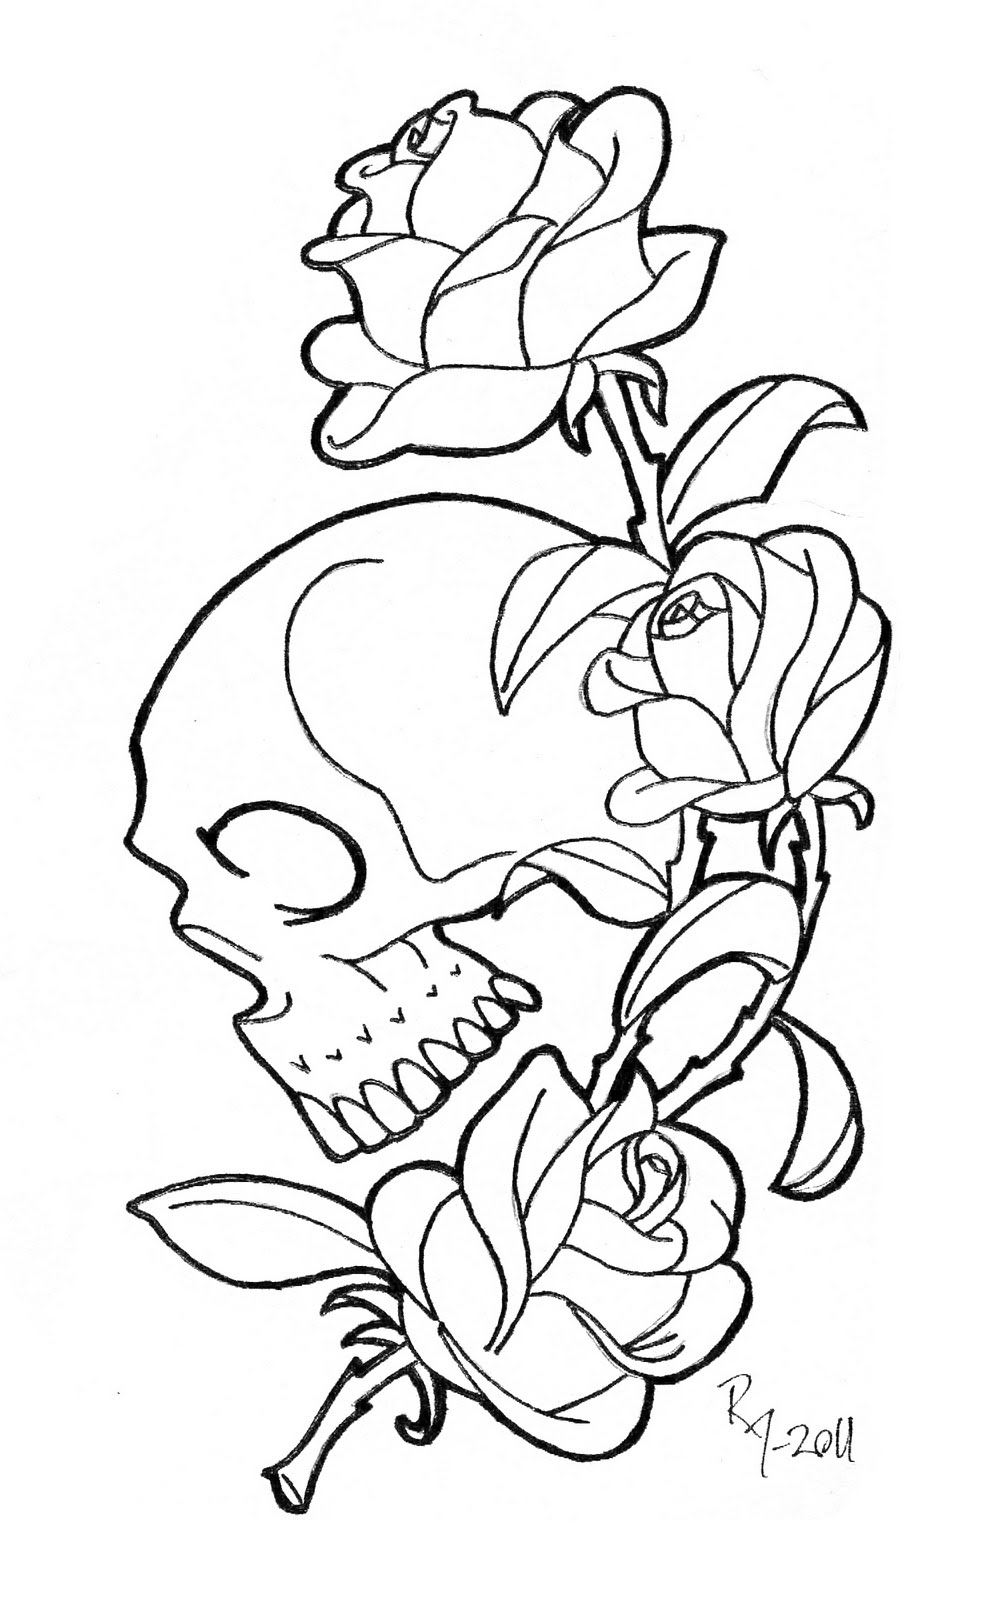 Skull Rose Drawing at GetDrawings | Free download